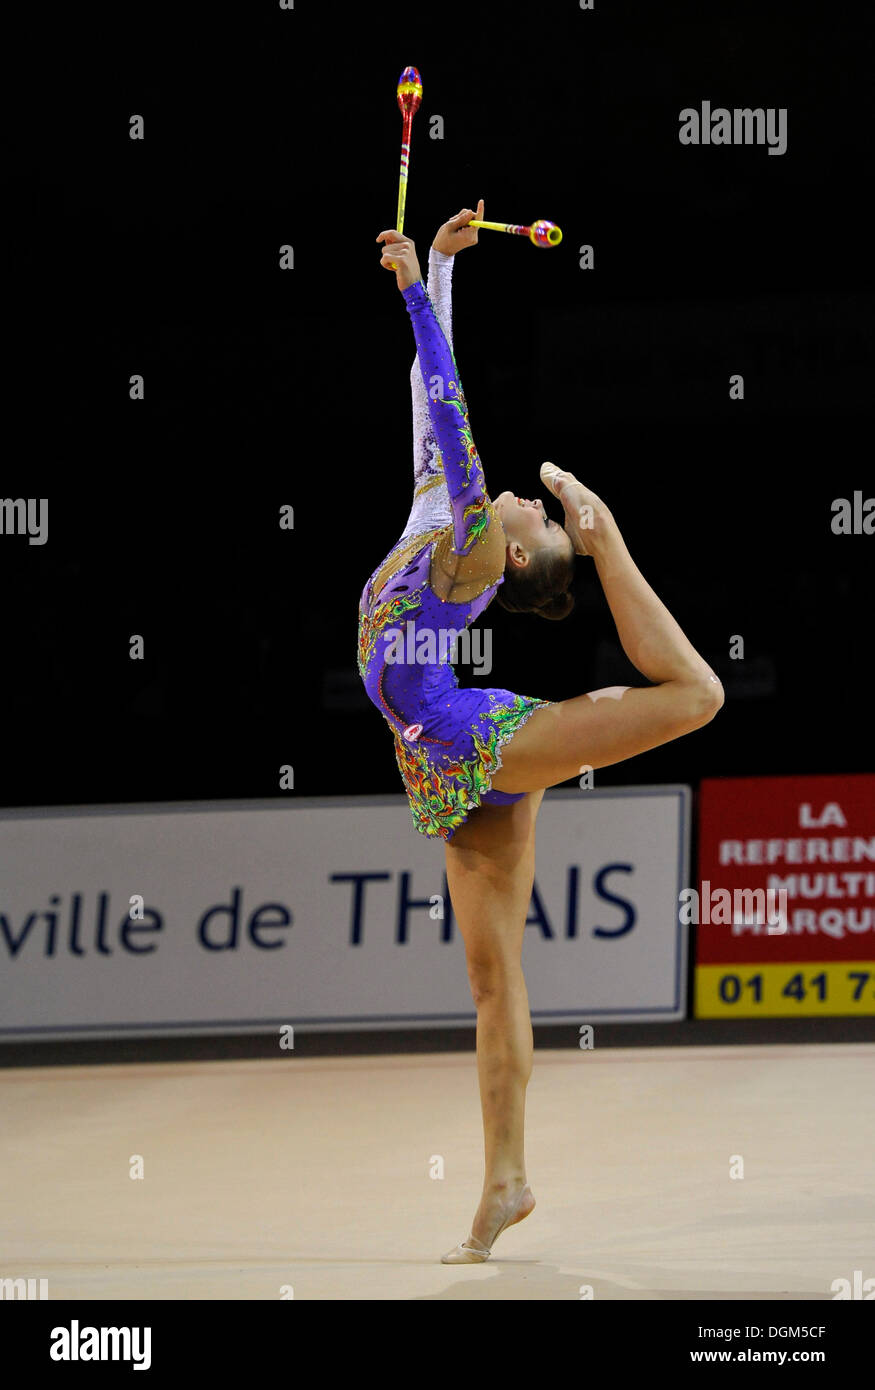 Yana Lukonina, RUS, avec les clubs, de gymnastique rythmique de Thiais Grand-Prix 2011, 9-10.04.2011, Paris, France, Europe Banque D'Images